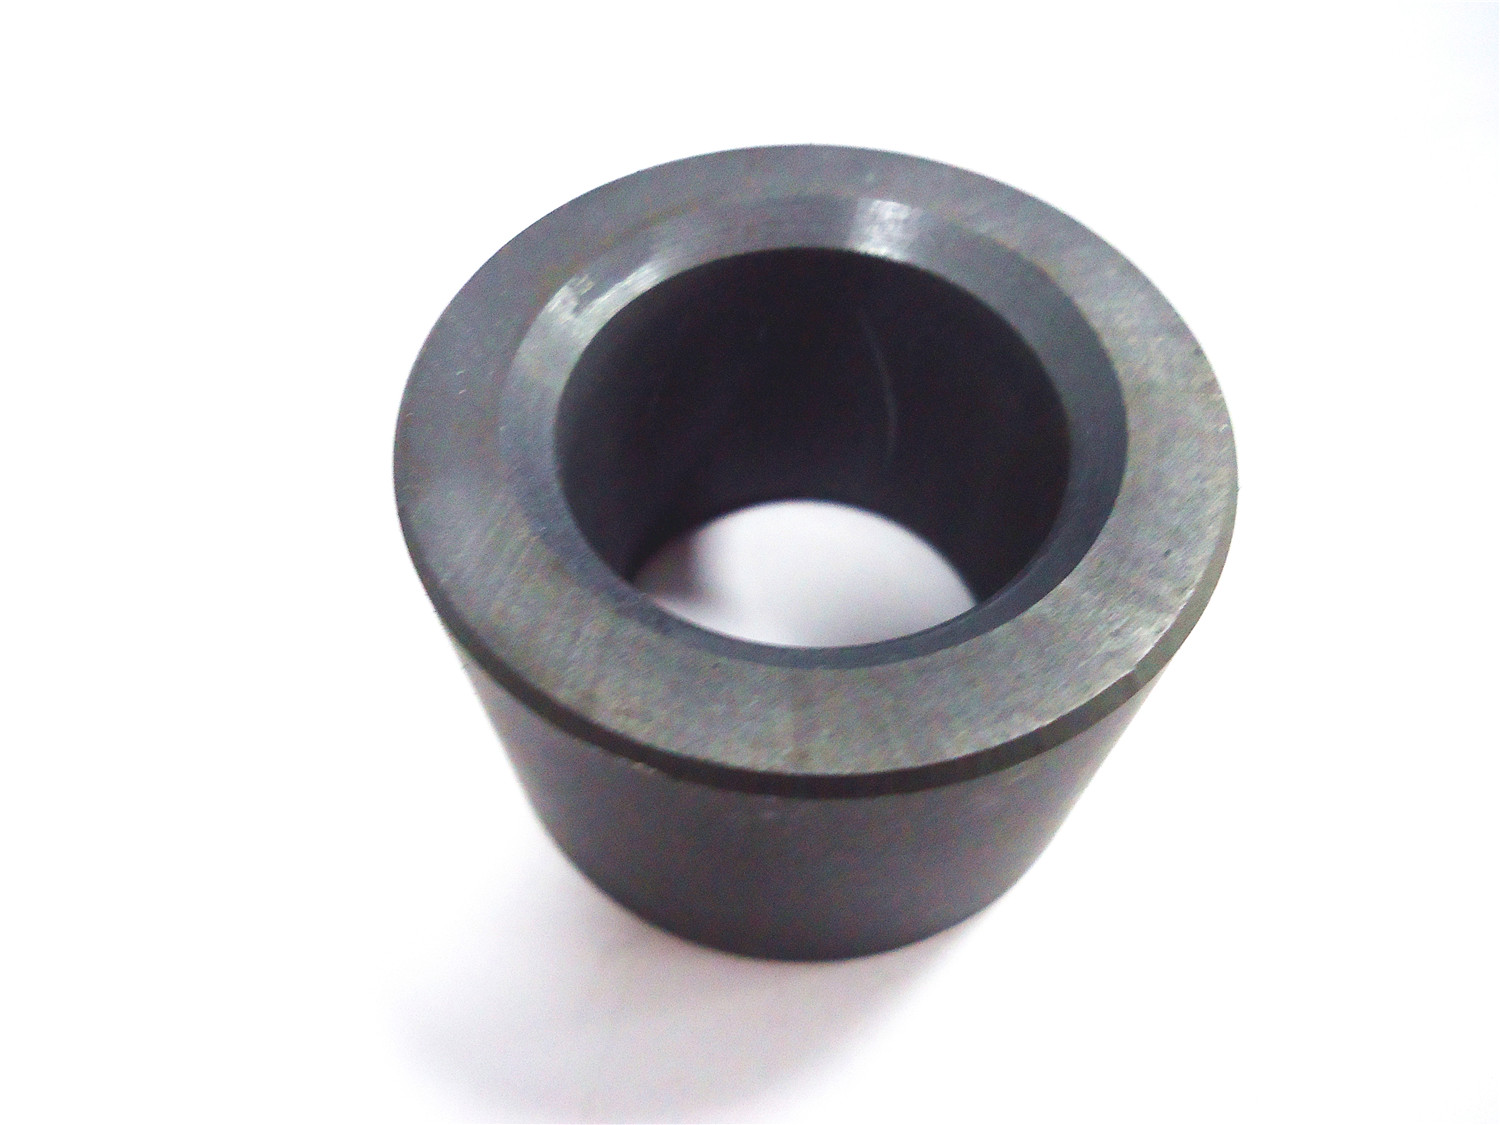 Permenet Ferrite ring motor magnet /Ceramic magnet for motor/ sintered hard ferrite magnet 